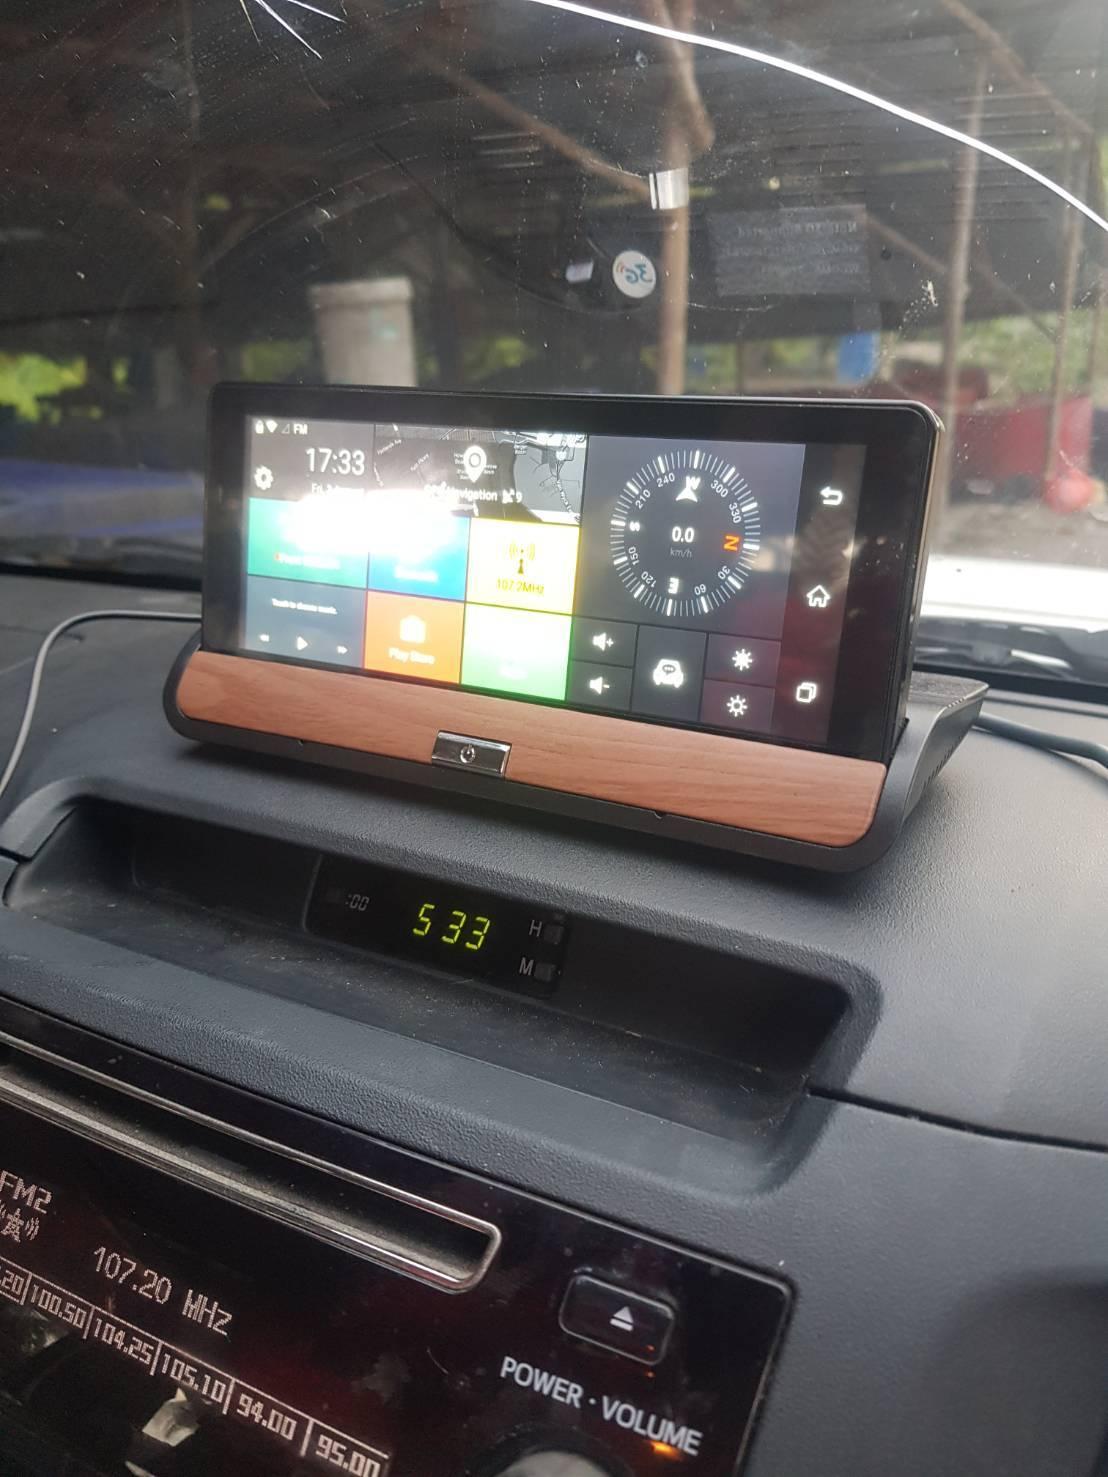 รีวิวบ้านๆ] กล้องติดรถจอ 6.8นิ้ว Android Gps Google Map ราคา1025บาทรวมส่ง -  Pantip